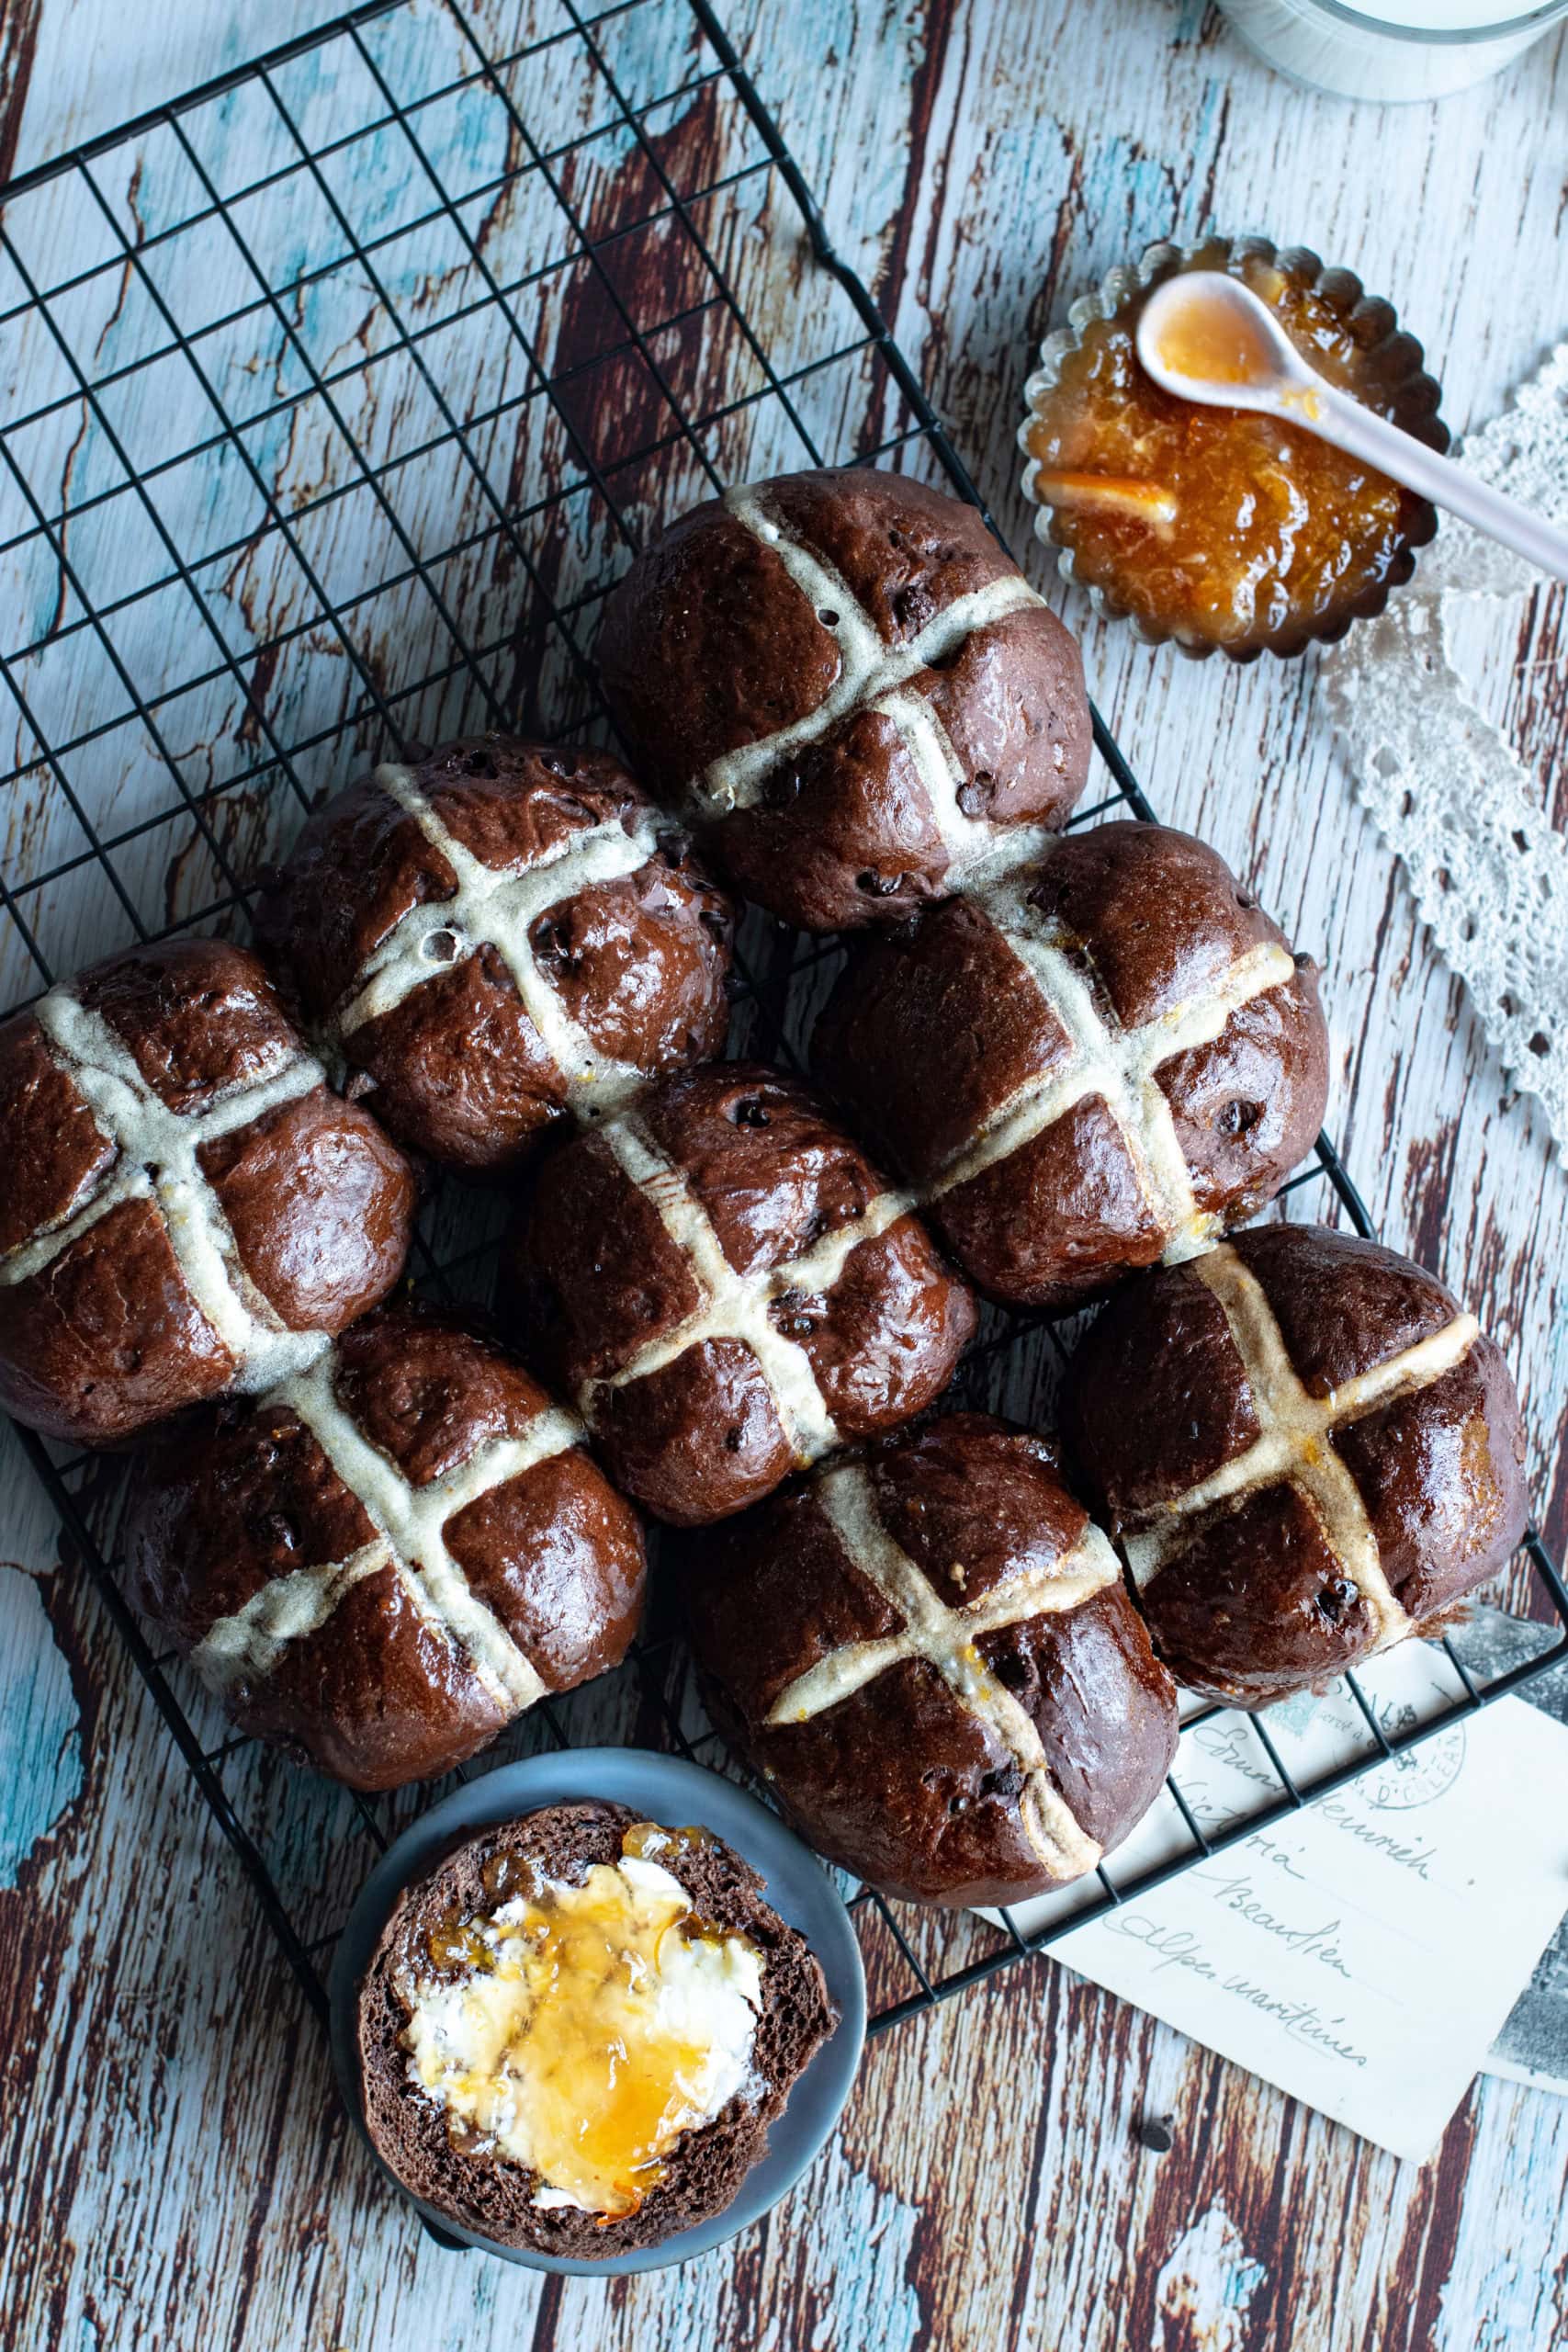 Comment réaliser en un tour de main de délicieux petits pains anglais "hot cross buns", une spécialité pour Pâques